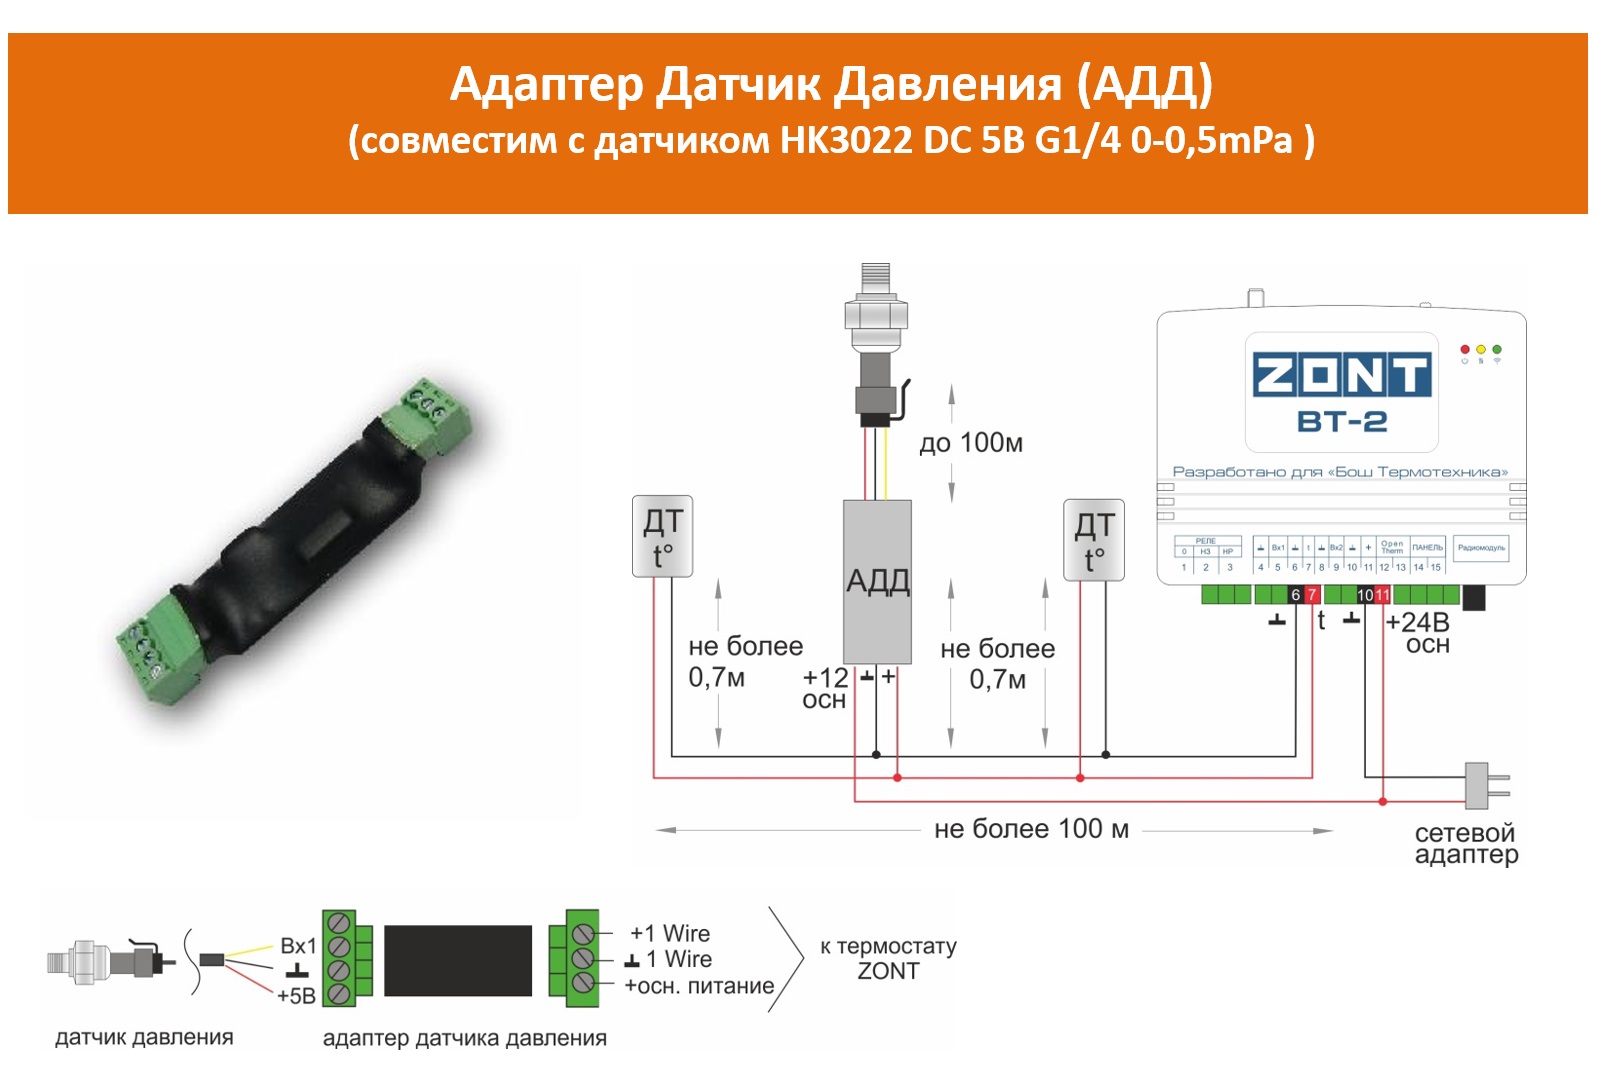 Zont ntc. Zont Smart 2.0 датчики температуры. Датчик давления теплоносителя для Zont. Схема подключения датчиков температуры Zont. Адаптер датчика давления Zont.